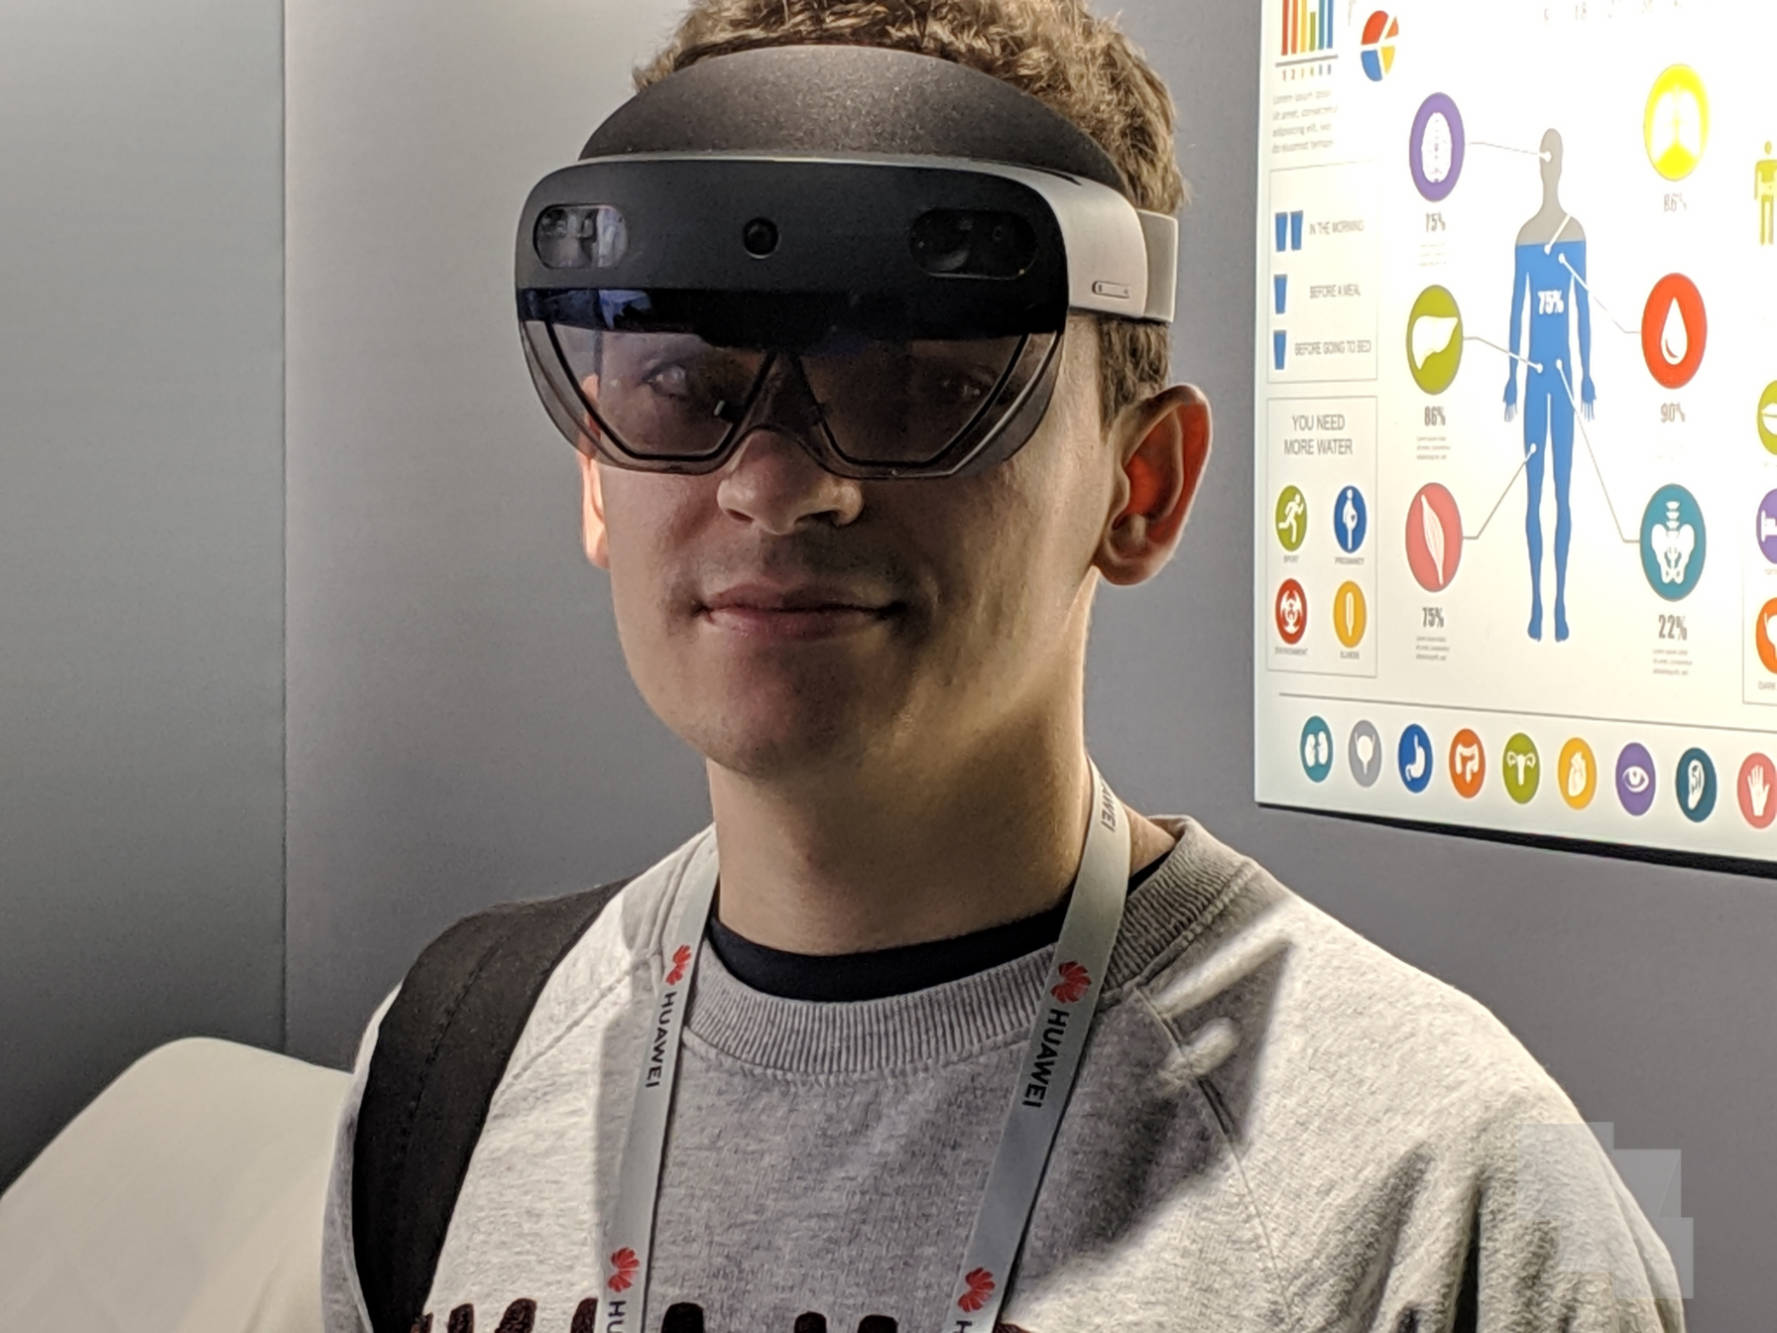 HoloLens 2, ya las hemos probado y te contamos la experiencia